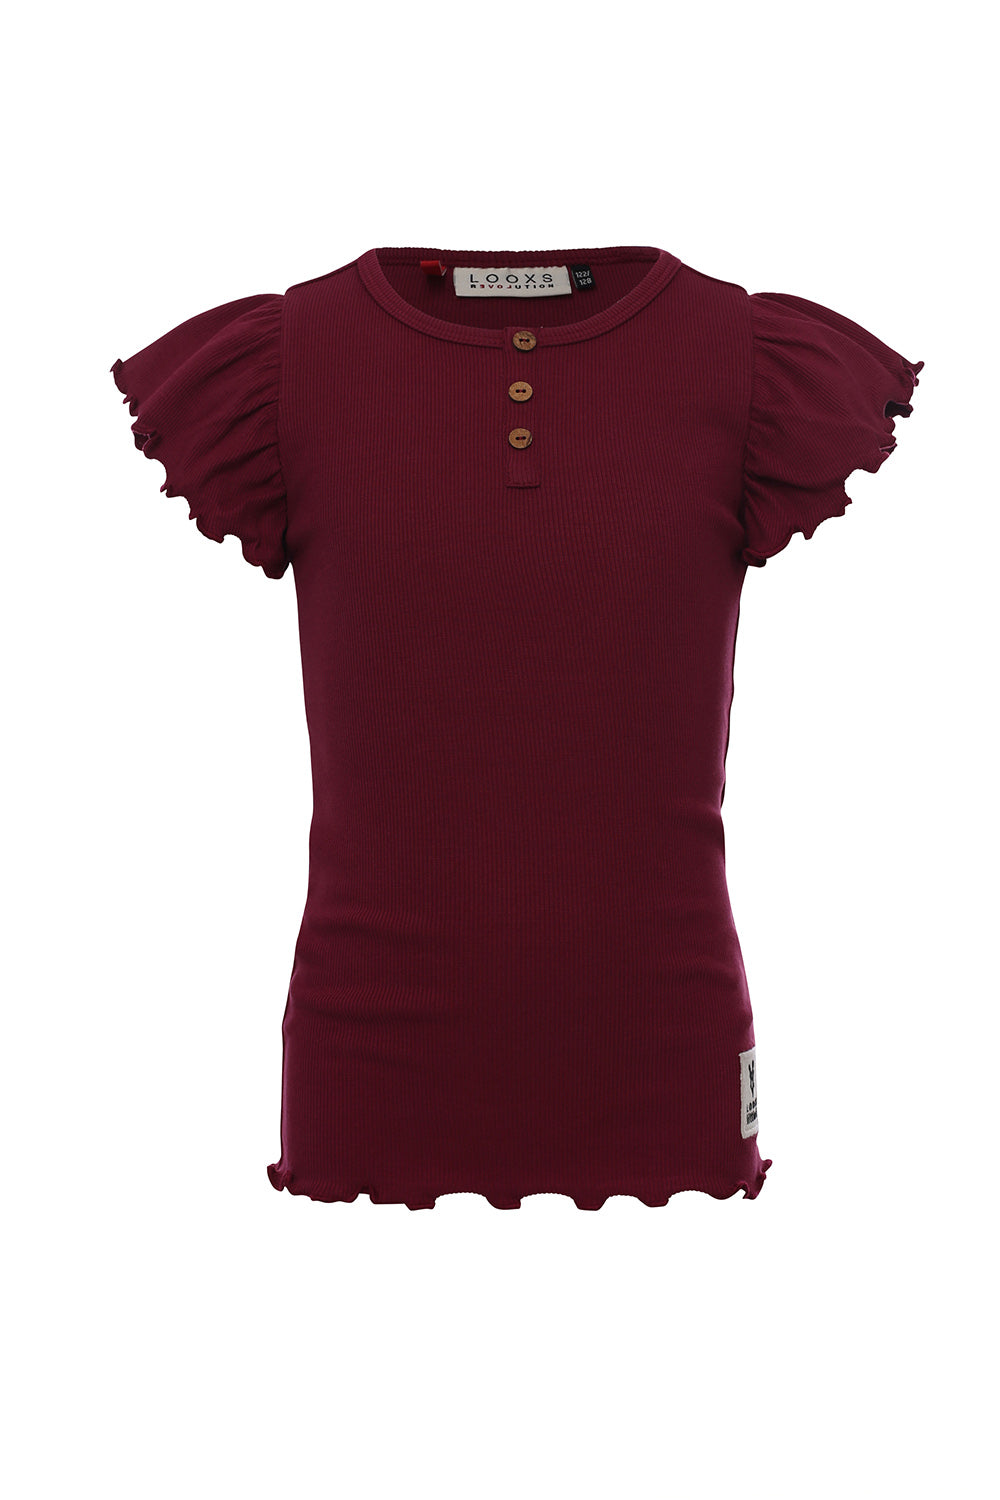 Meisjes Rib T-Shirt van LOOXS Little in de kleur Merlot in maat 128.